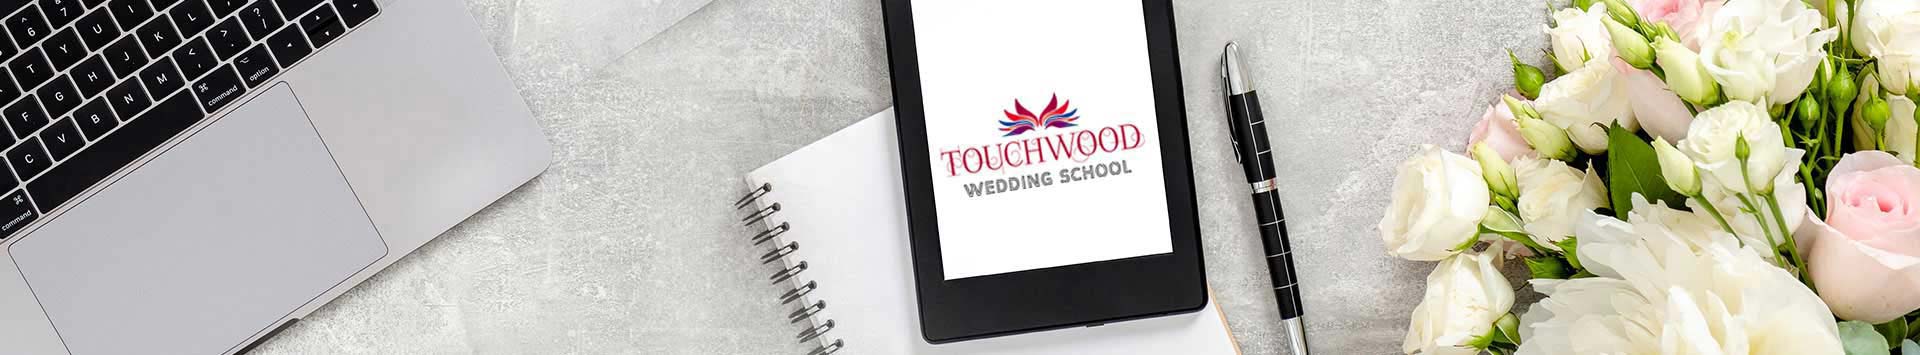 Contact Touchwood Wedding School